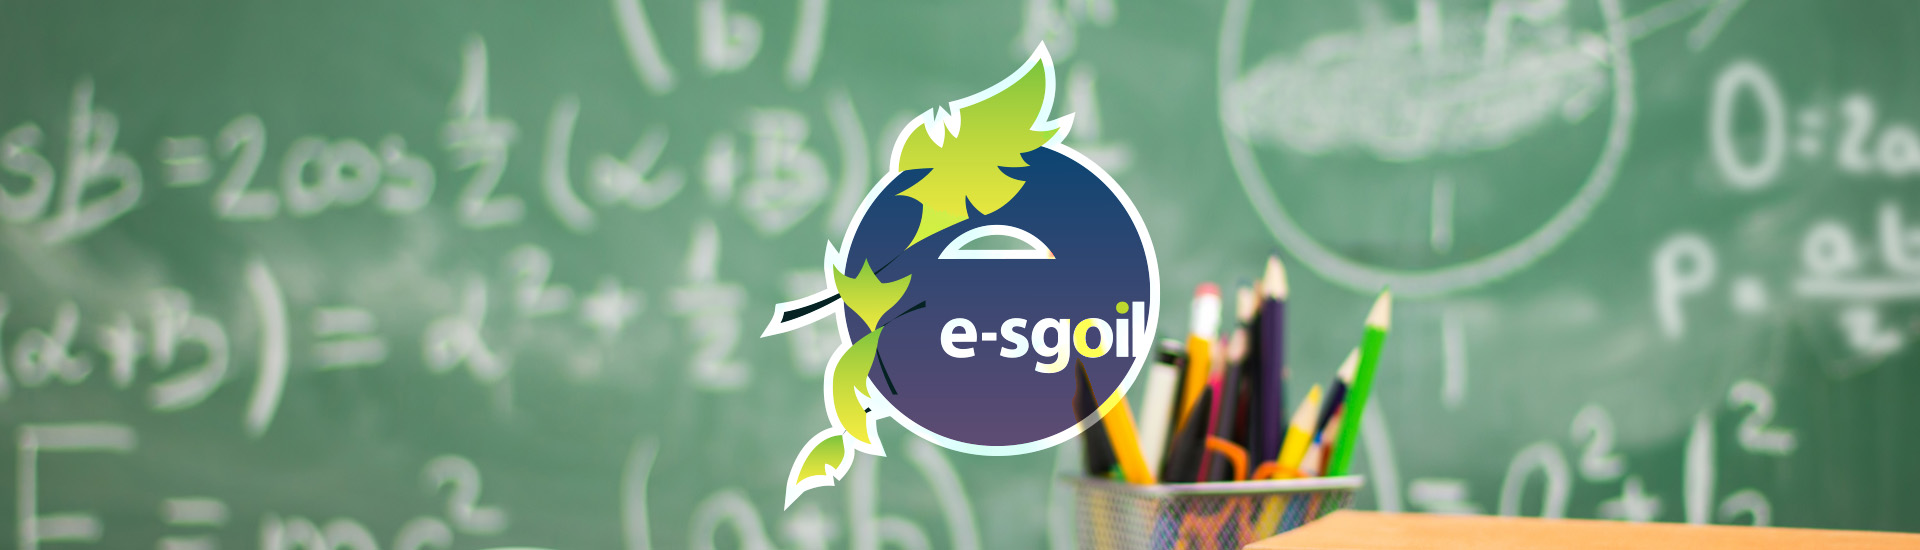 Esgoil Logo Background Image